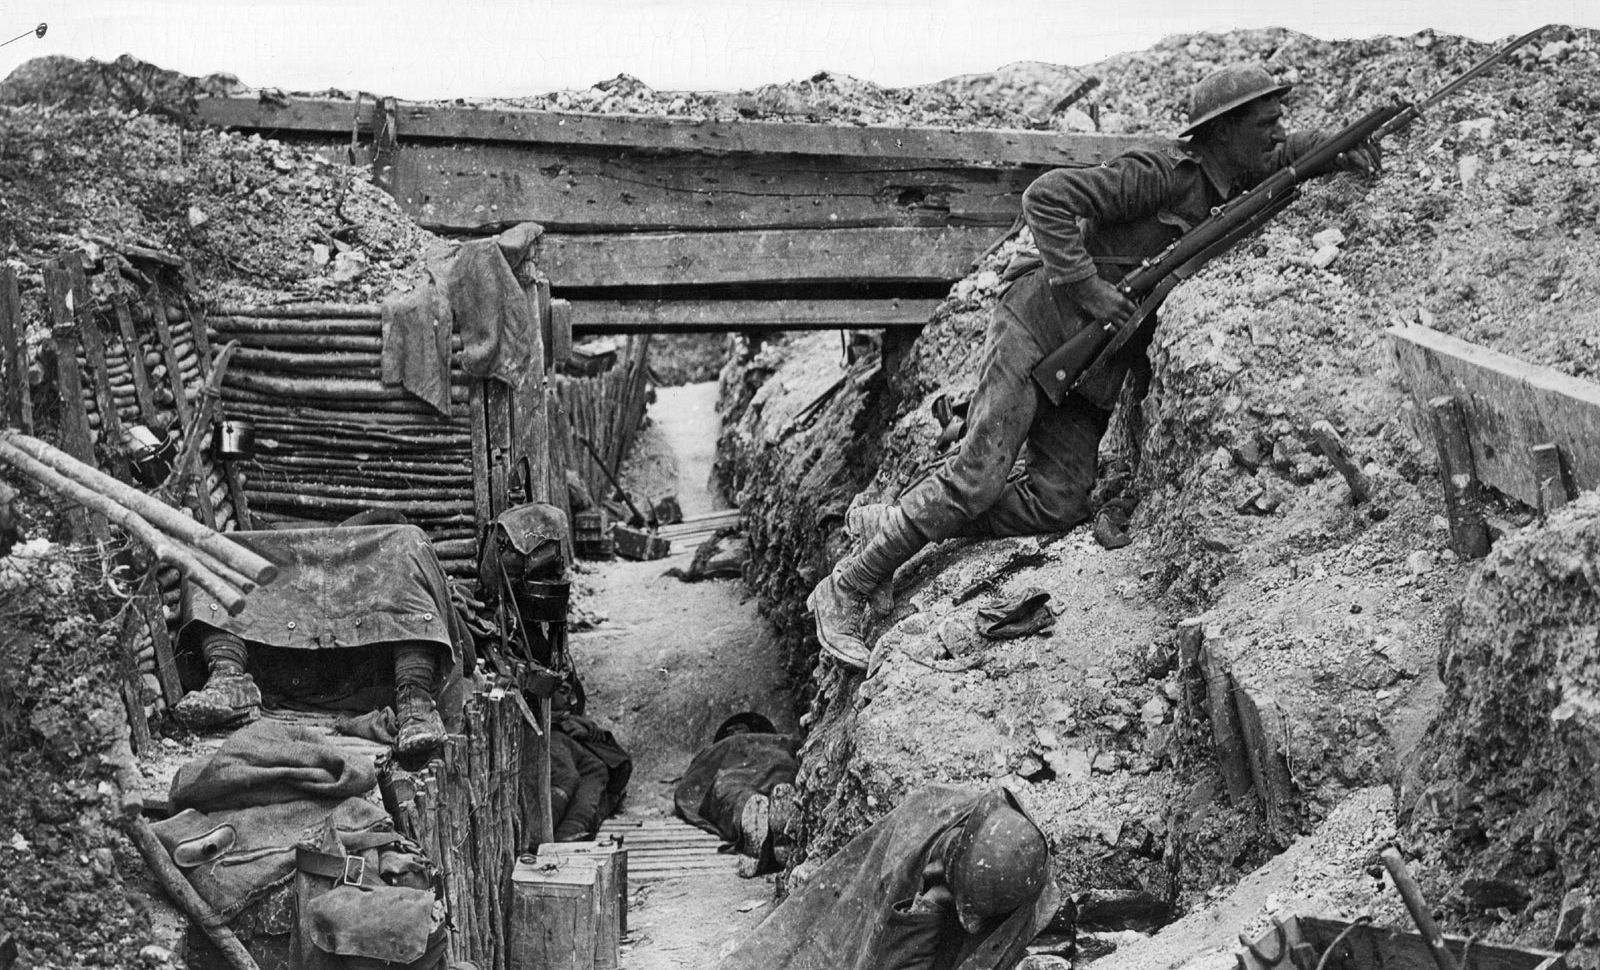 Et foto af en britisk skyttegrav. En soldat kigger ud over kanten. Gravforholdene ser grumme og beskidte ud